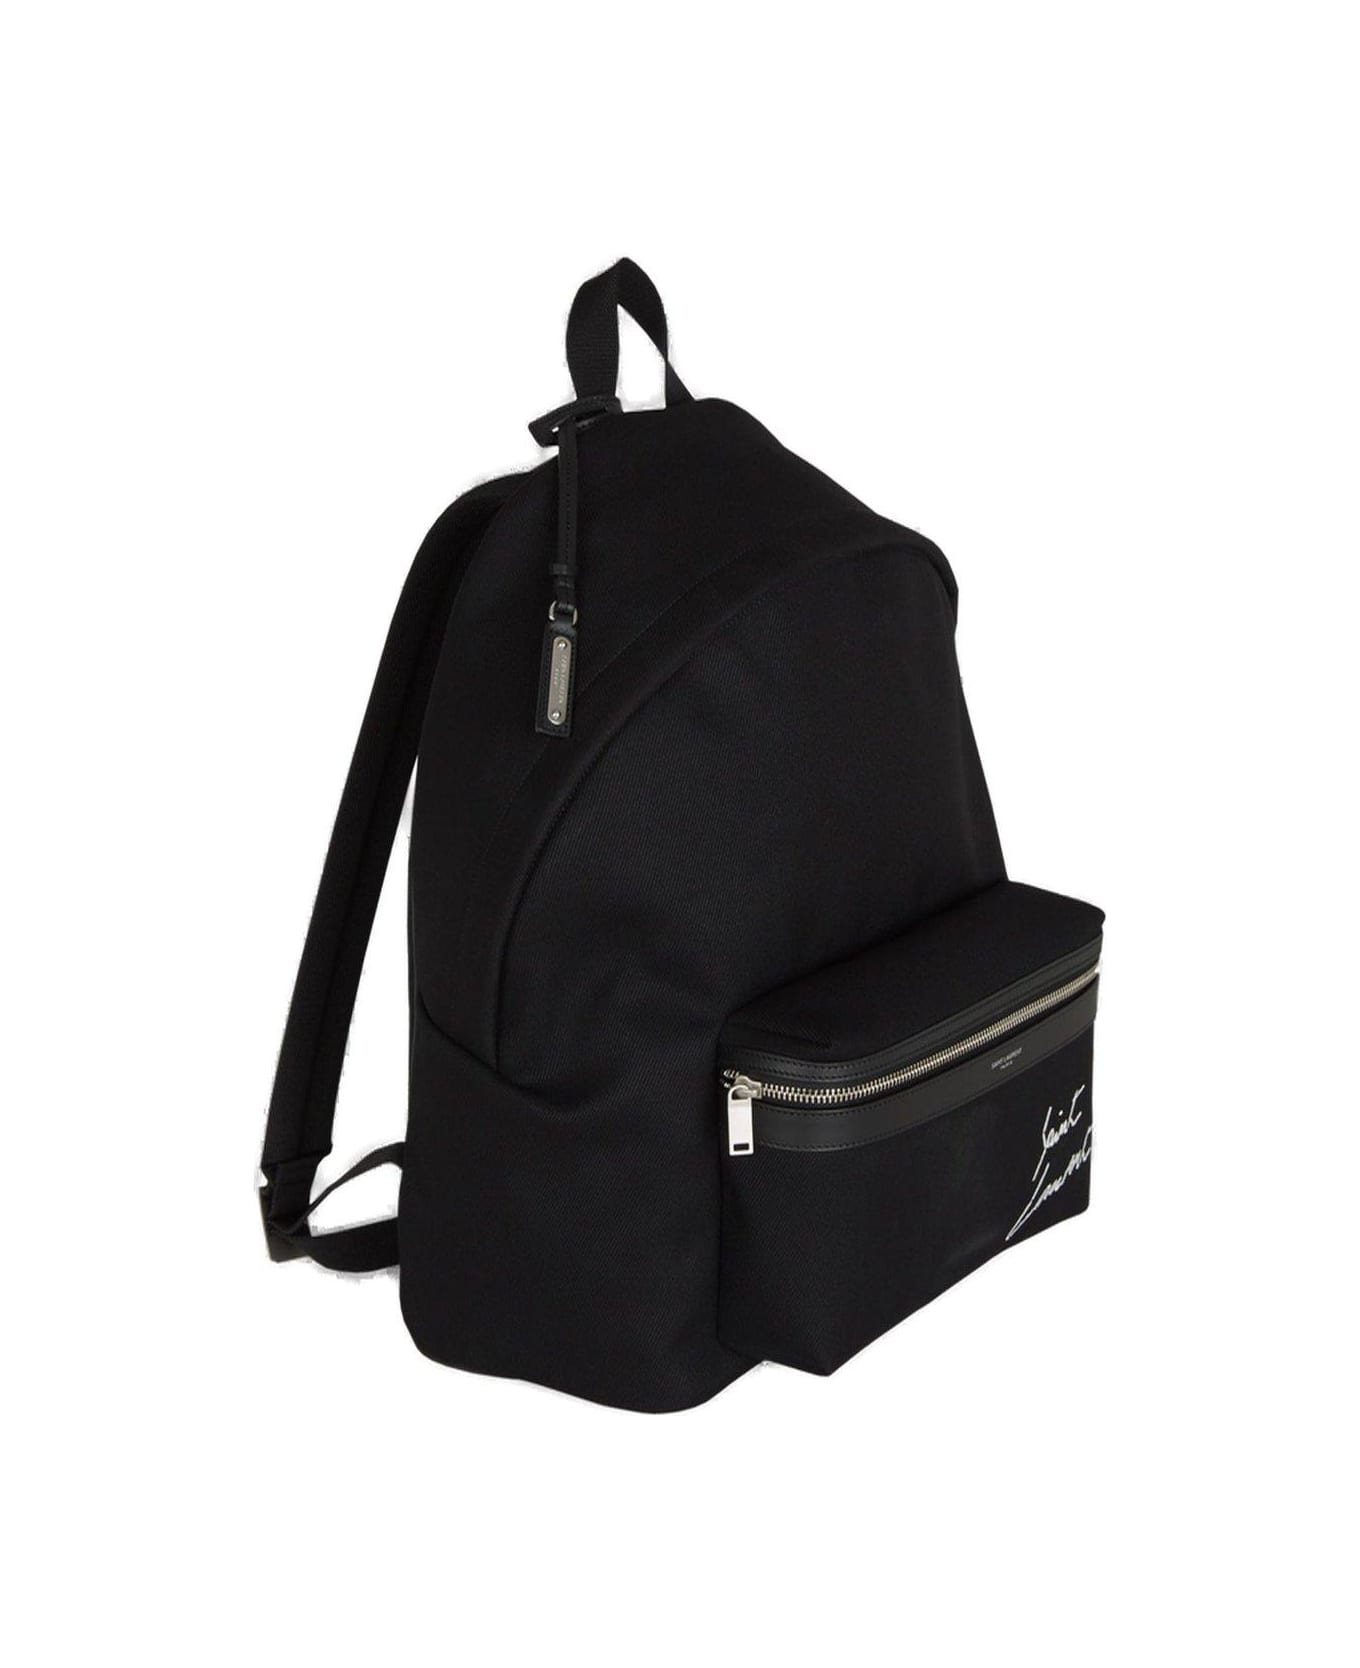 Saint Laurent City Logo Emboridered Zipped Backpack - Black